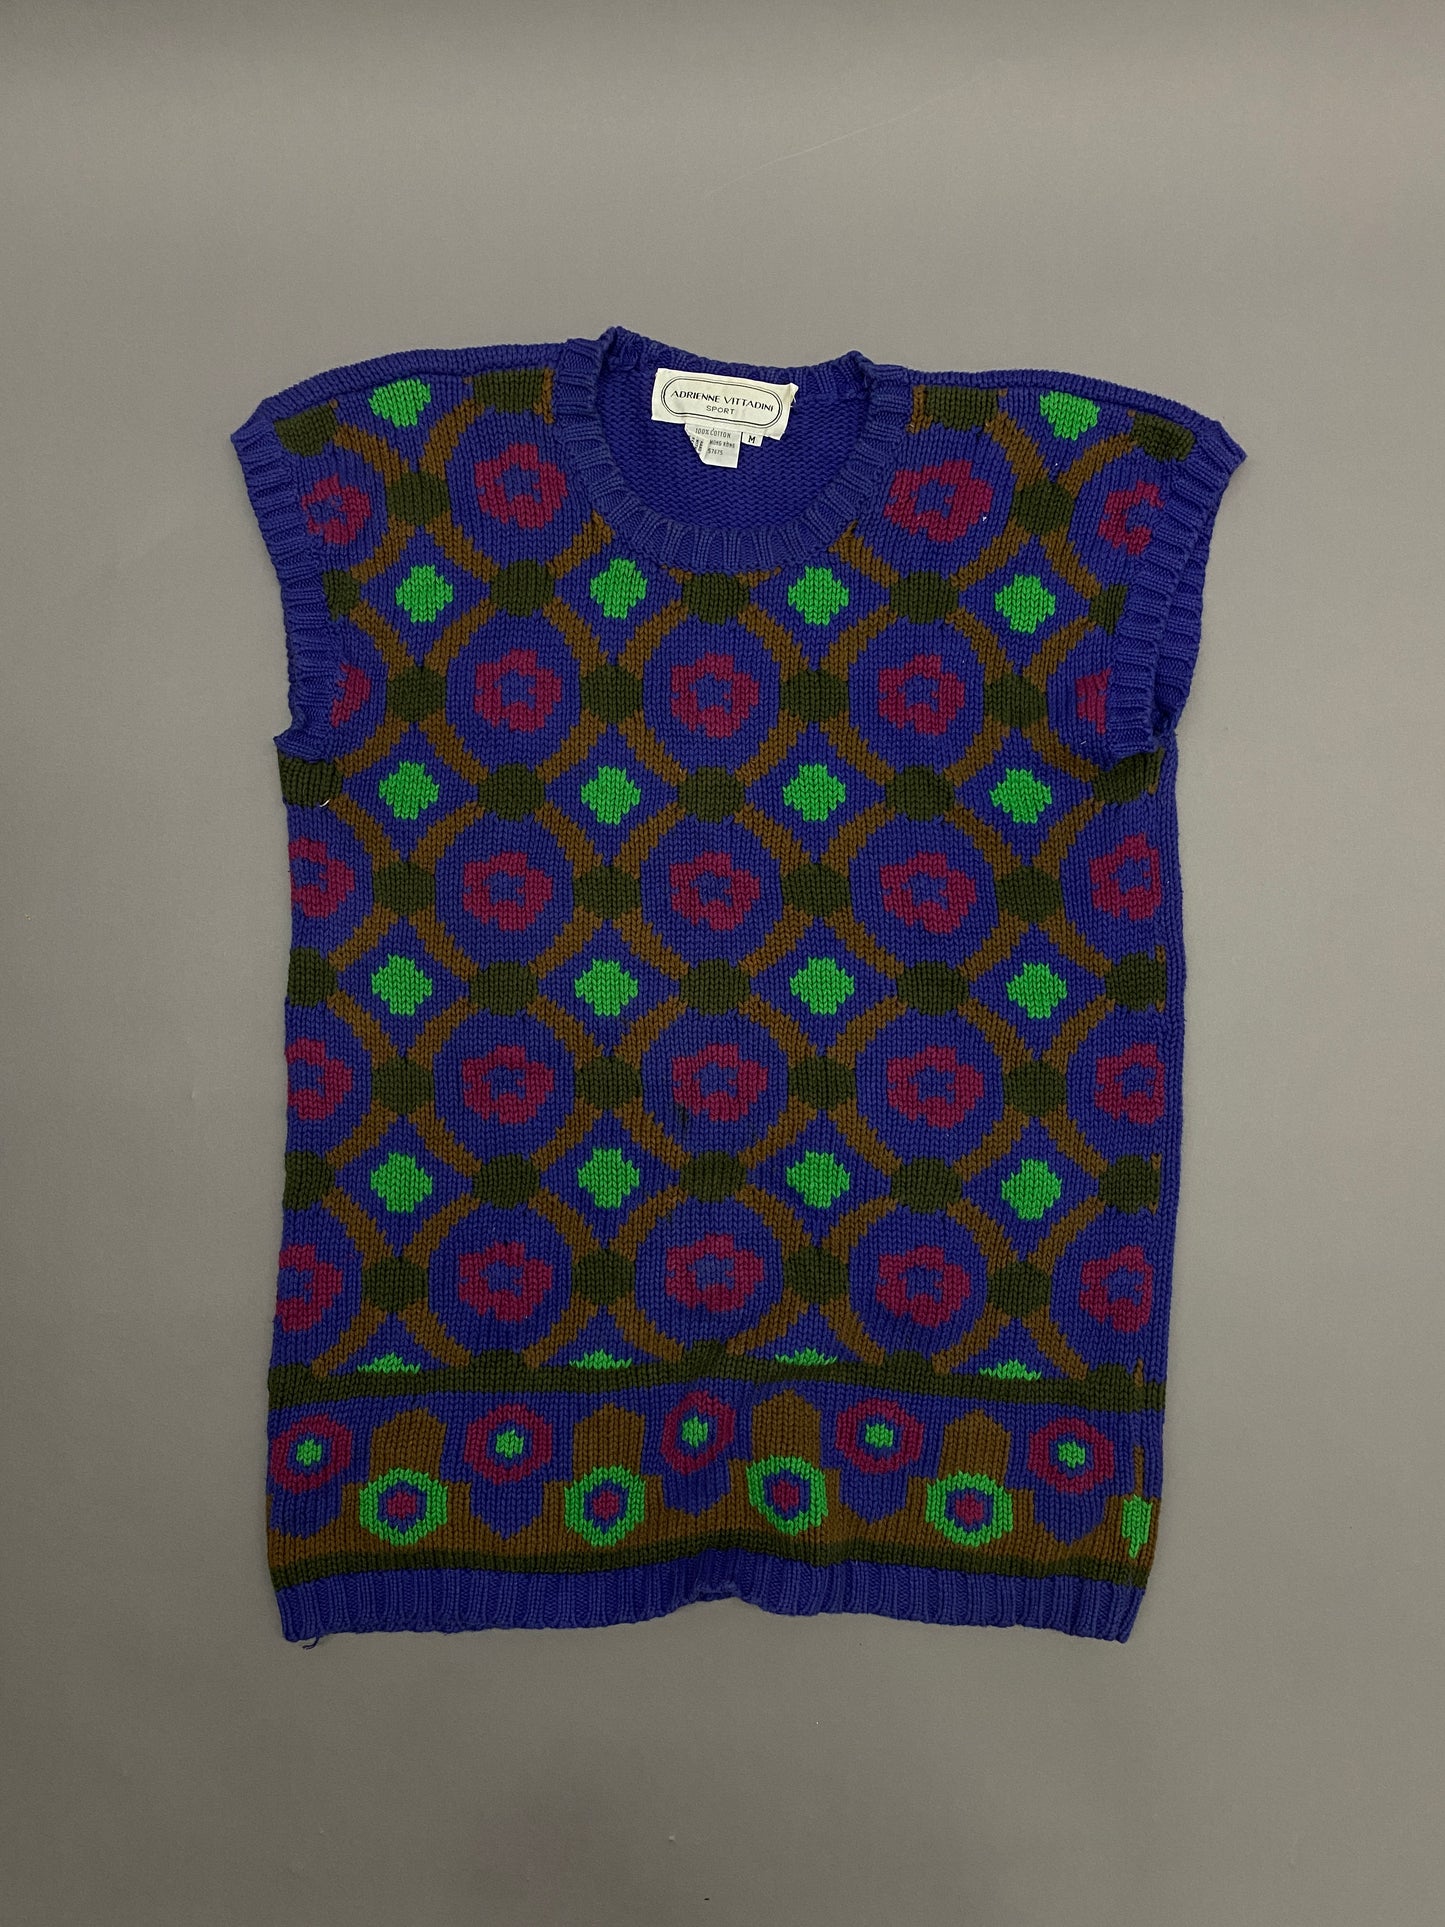 Vittadini Vintage Sweater